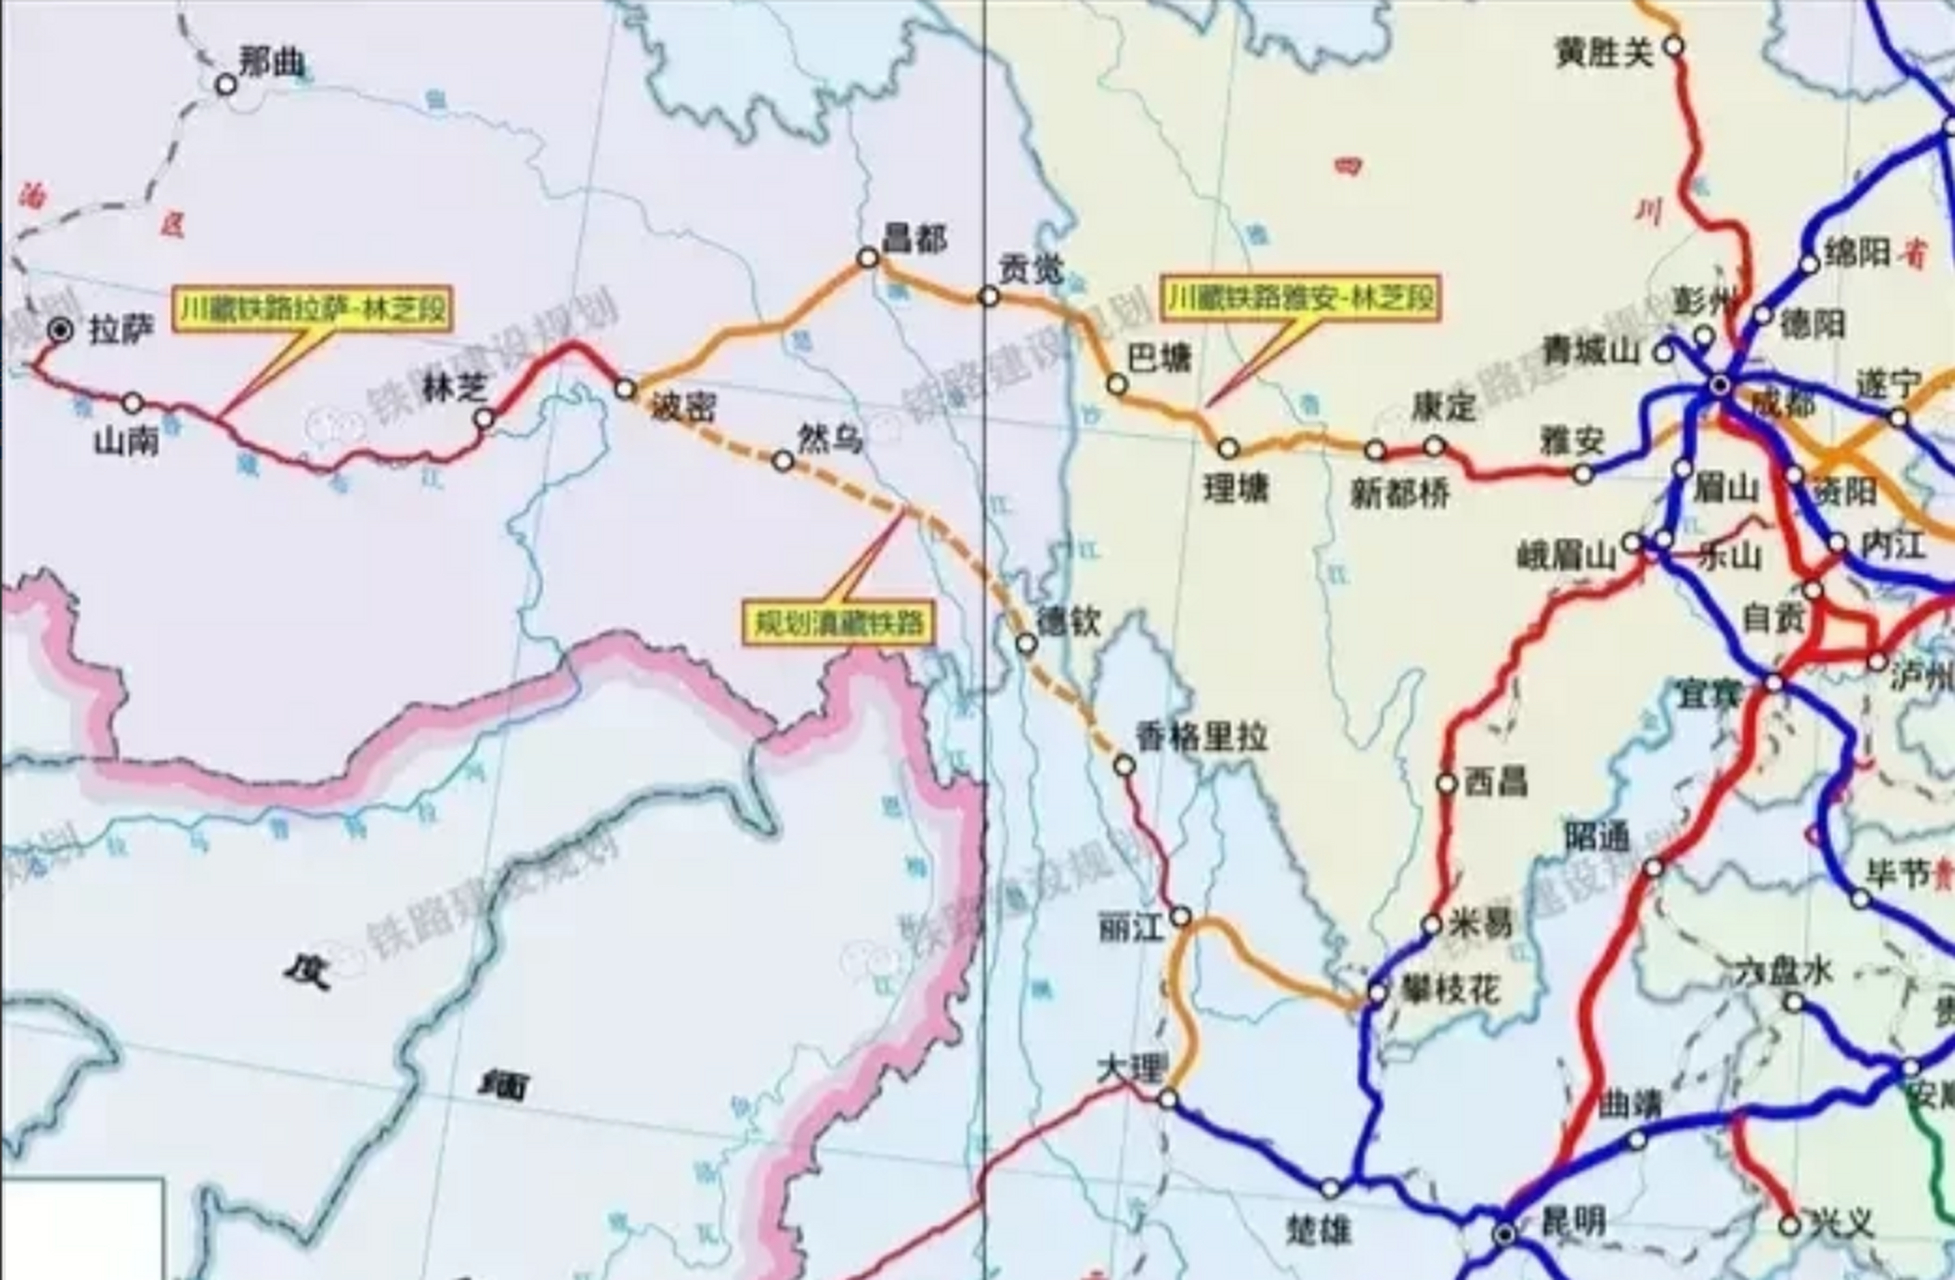 今年丽江至香格里拉的铁路就通车了,下一步应该马上启动香格里拉至